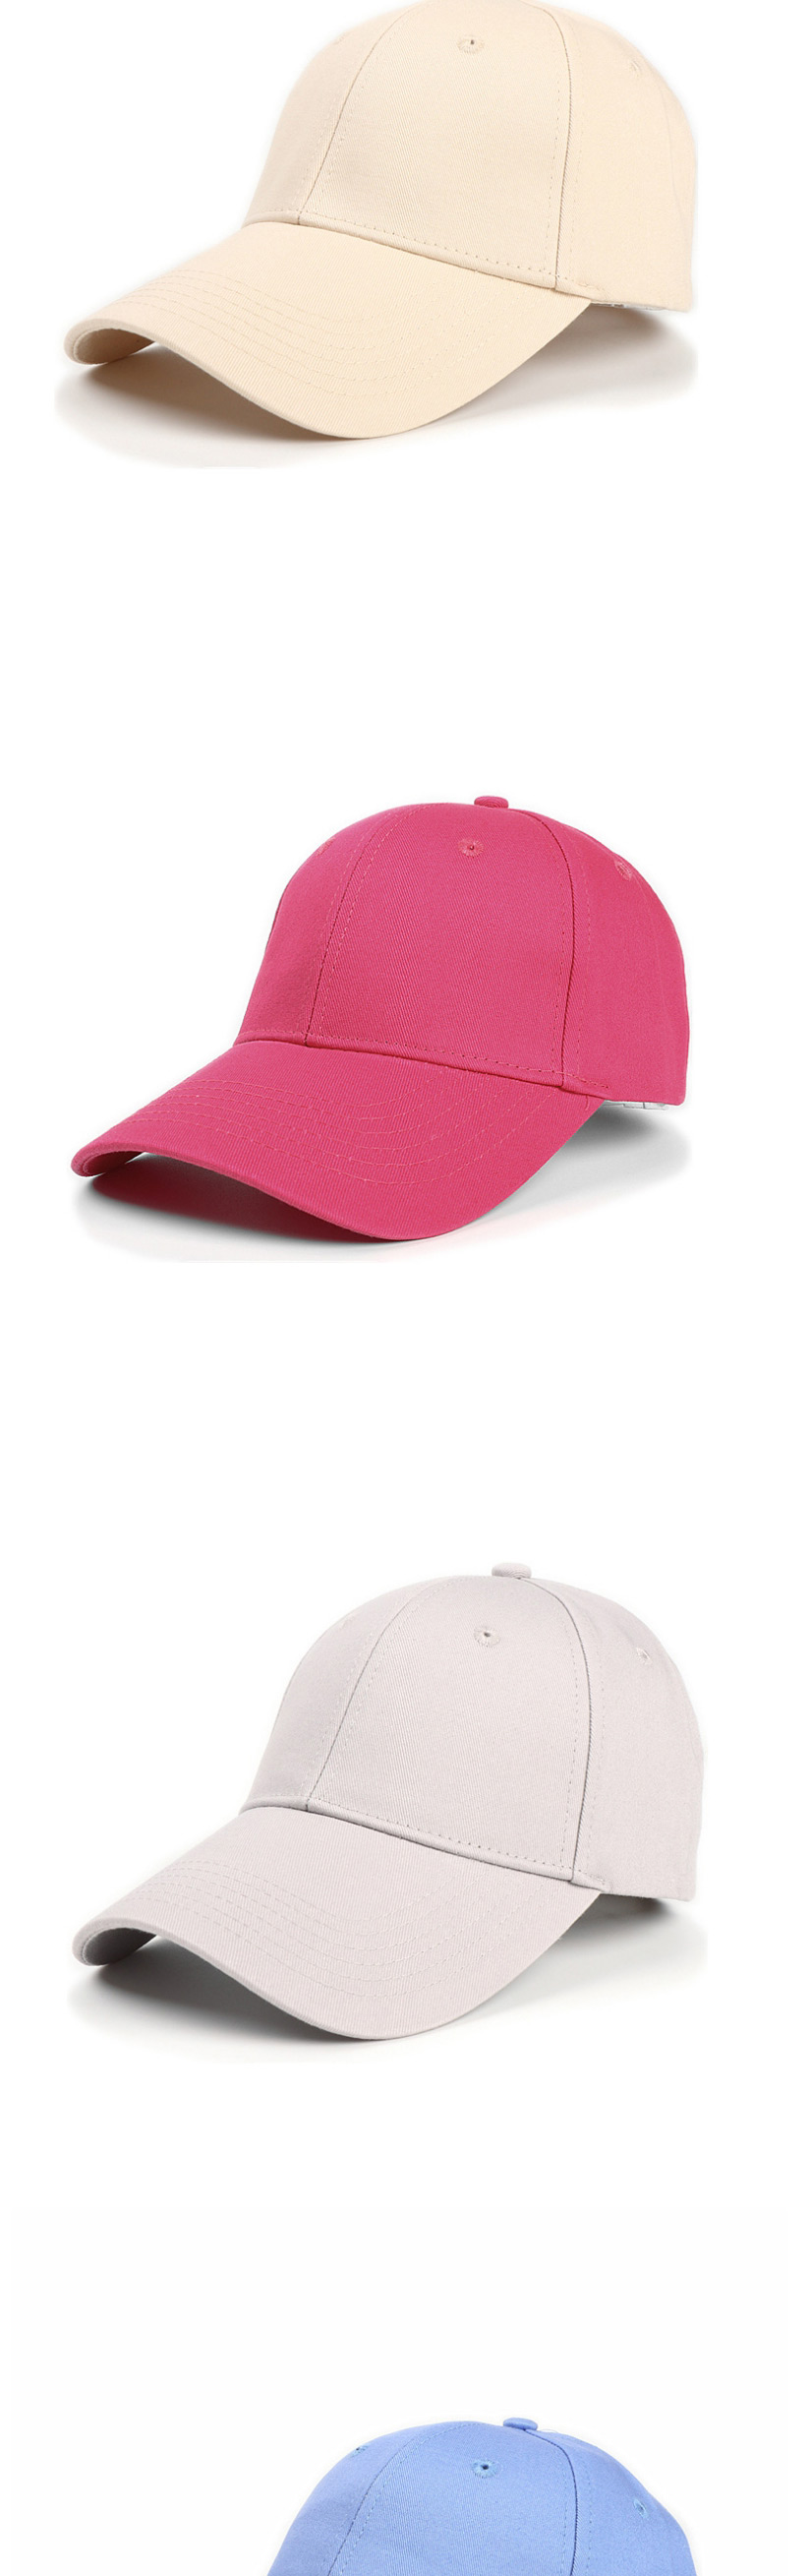 Fashion Pink Cotton Hard Top And Long Brim Baseball Cap,Baseball Caps